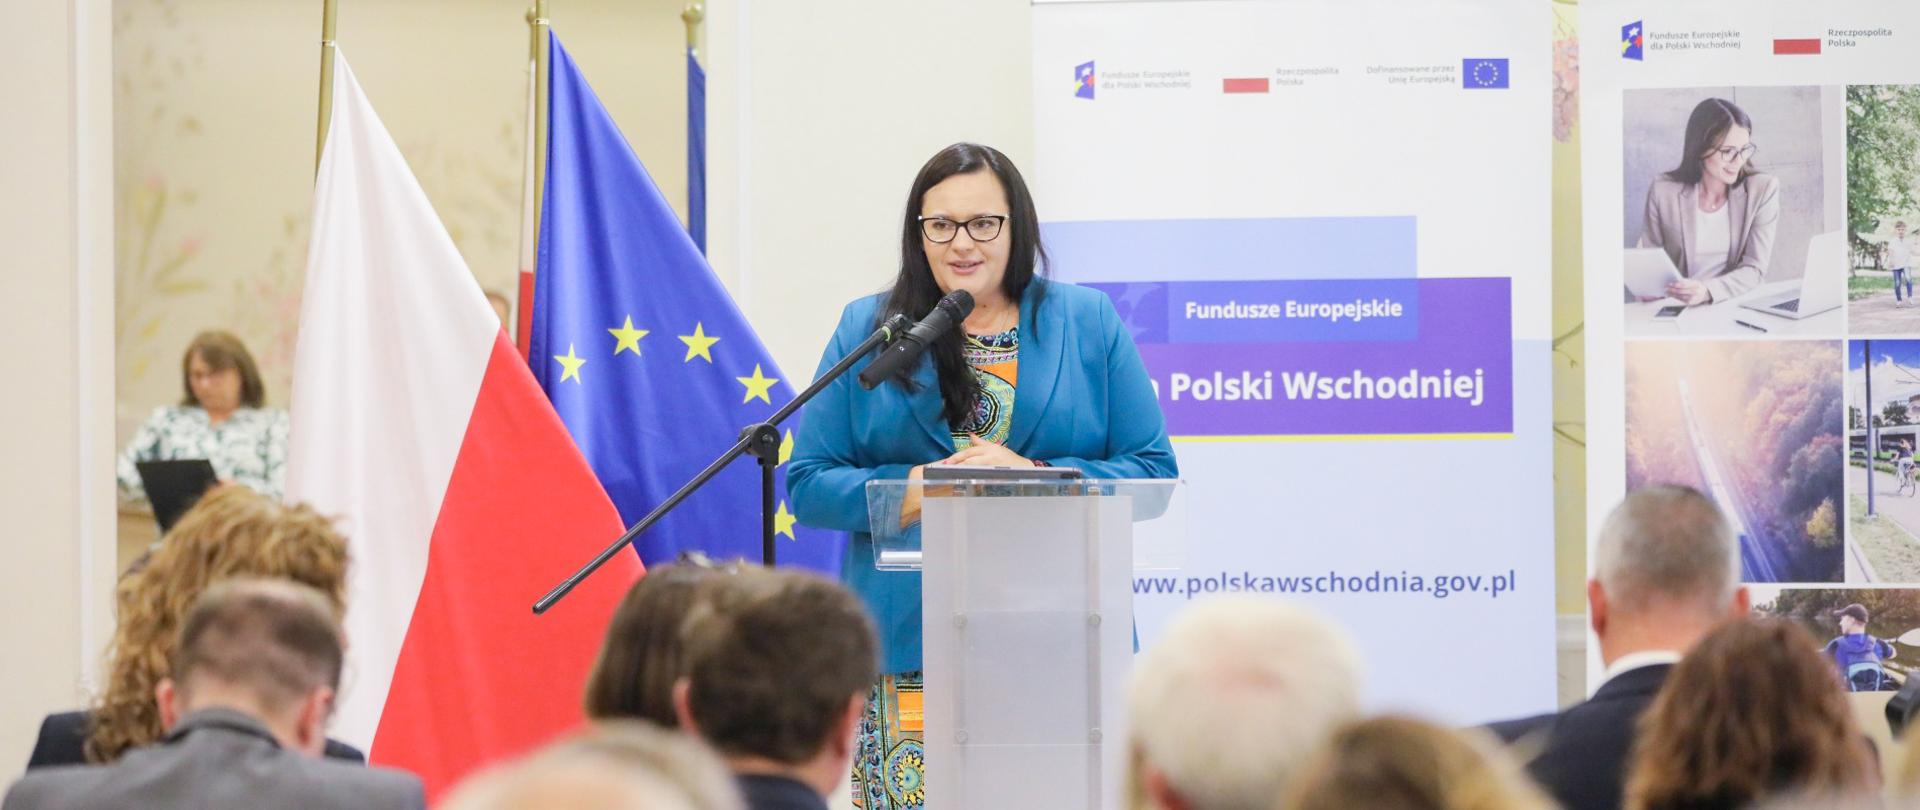 W sali konferencyjnej w mównicy z mikrofonem wiceminister Małgorzata Jarosińska-Jedynak. Przed nią publiczność. Za nią flagi PL i UE oraz banery.